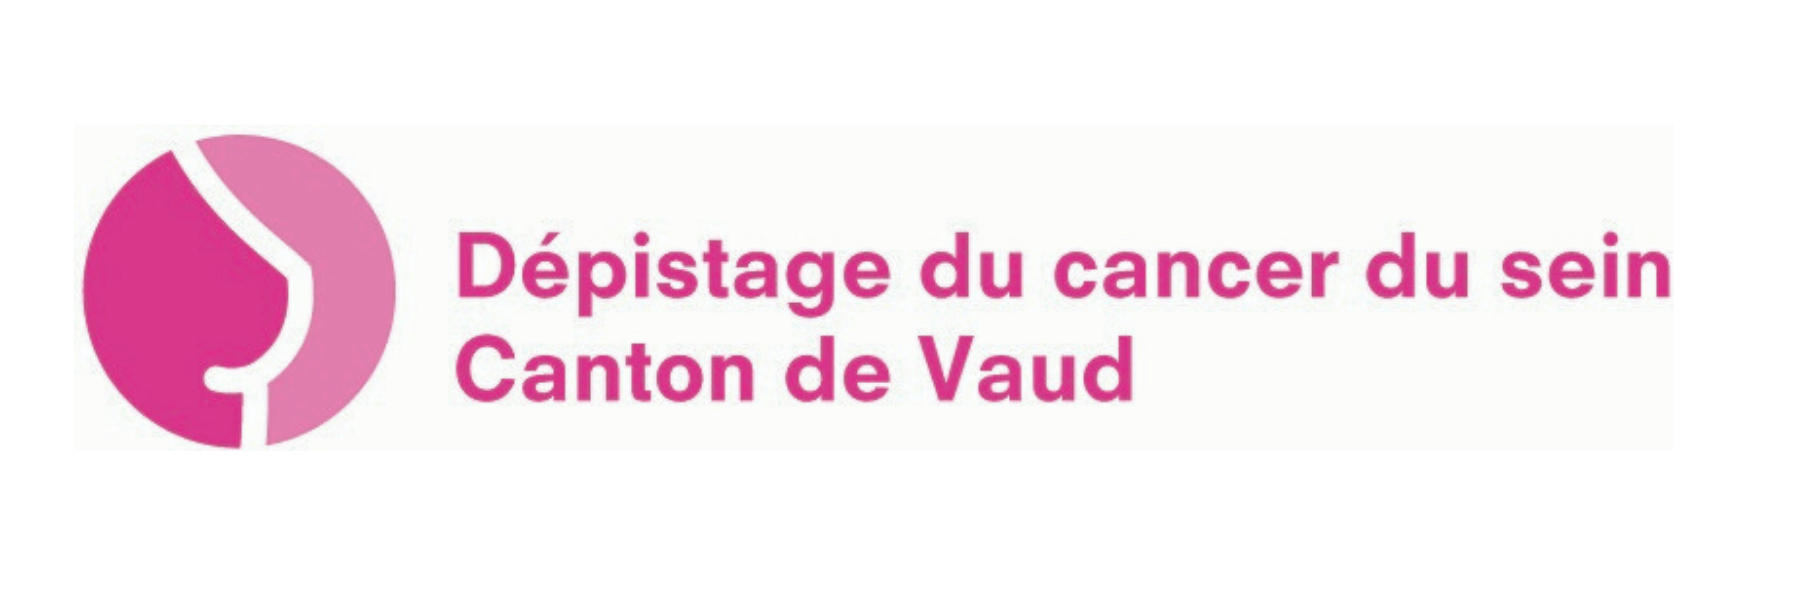 Dépistage du cancer du sein Canton de Vaud